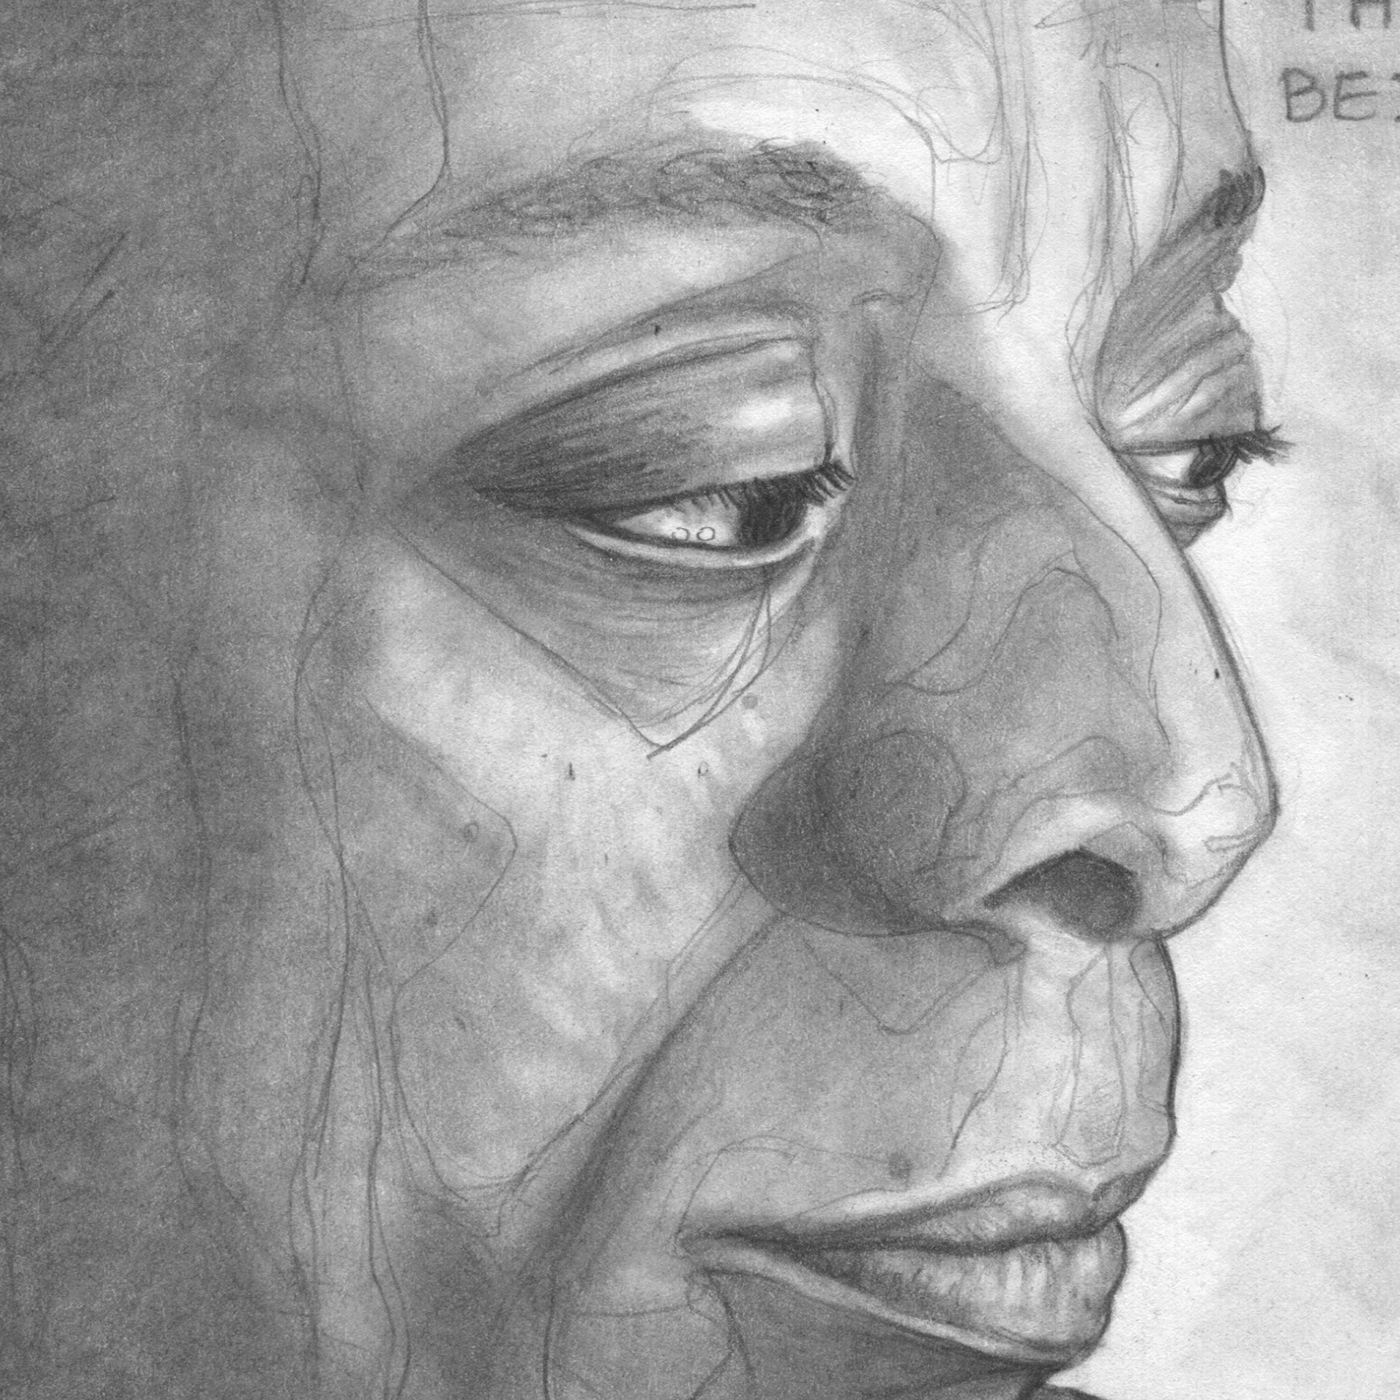 james baldwin Baldwin portrait PORTRAIT DRAWING sketch sketchbook moleskine Hero quote